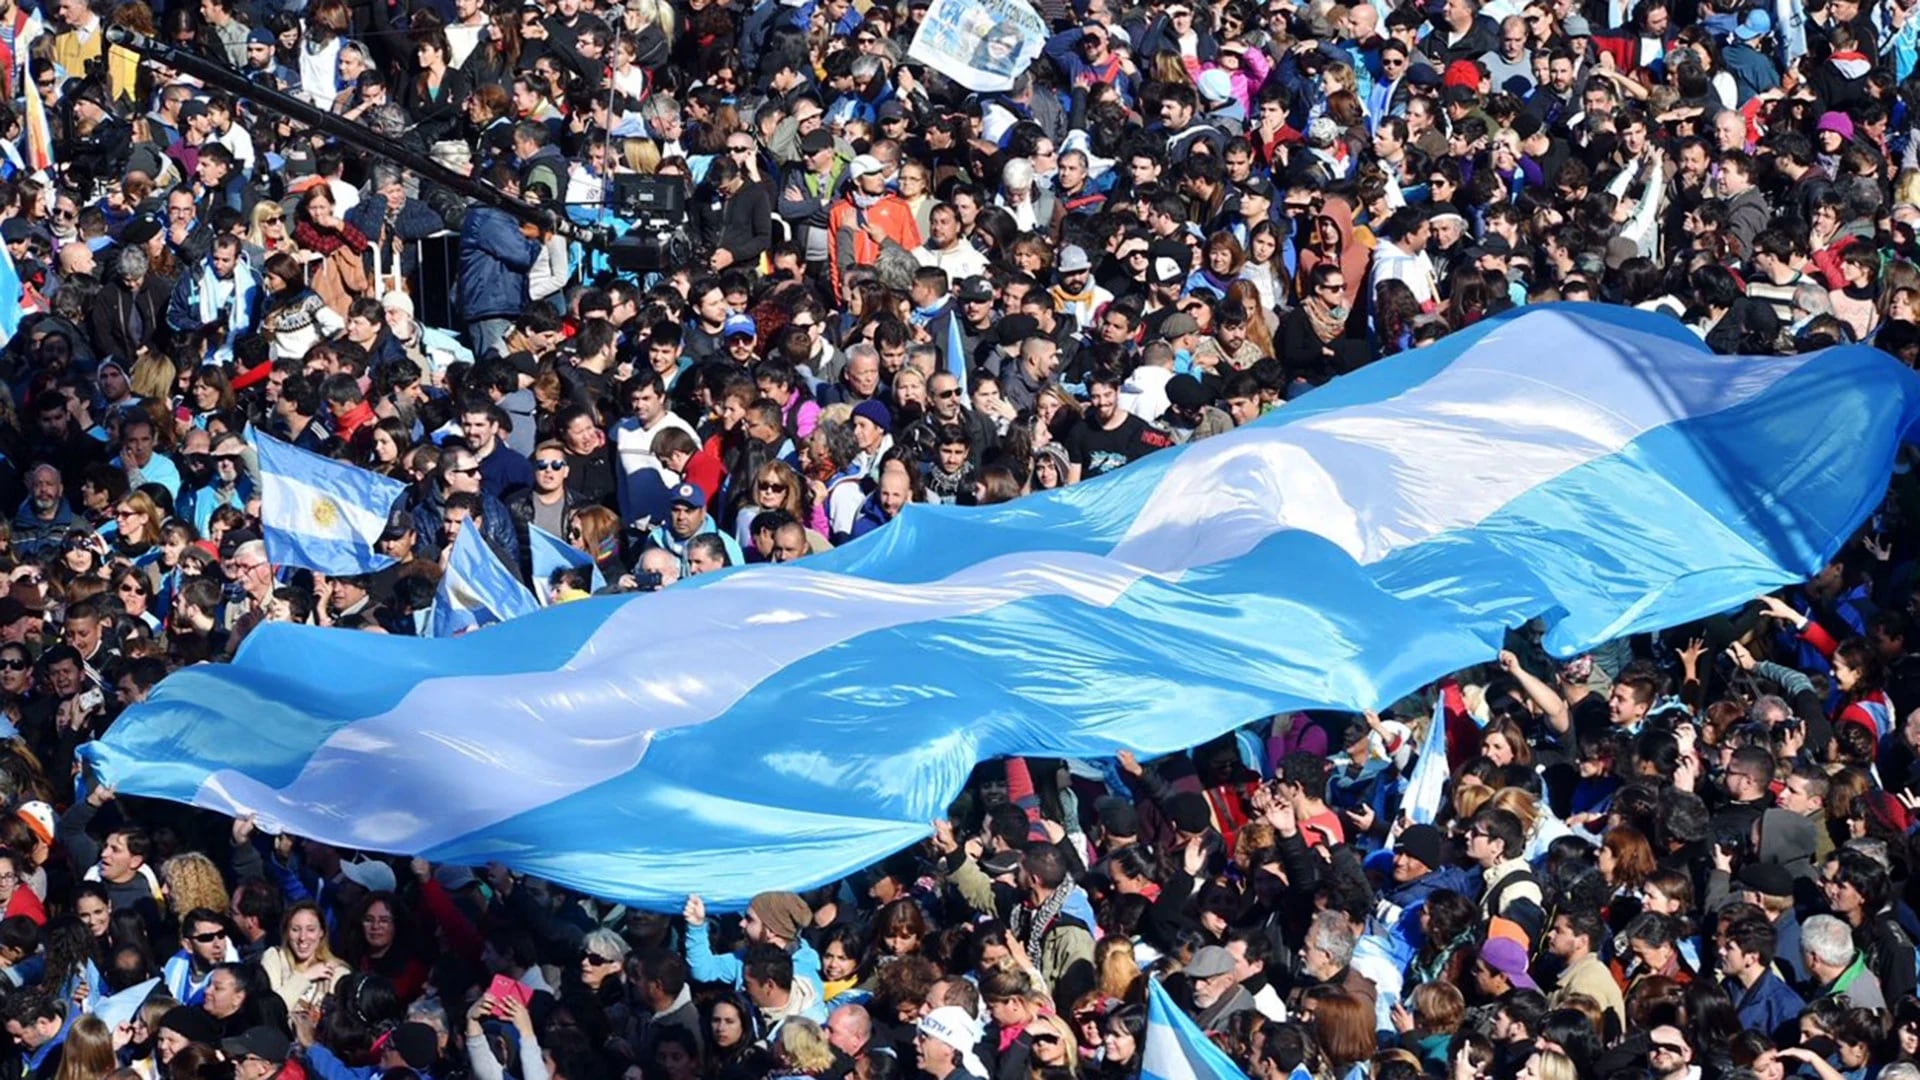 Las banderas argentinas se multiplican y el celeste y blanco domina la escena en Sarandí